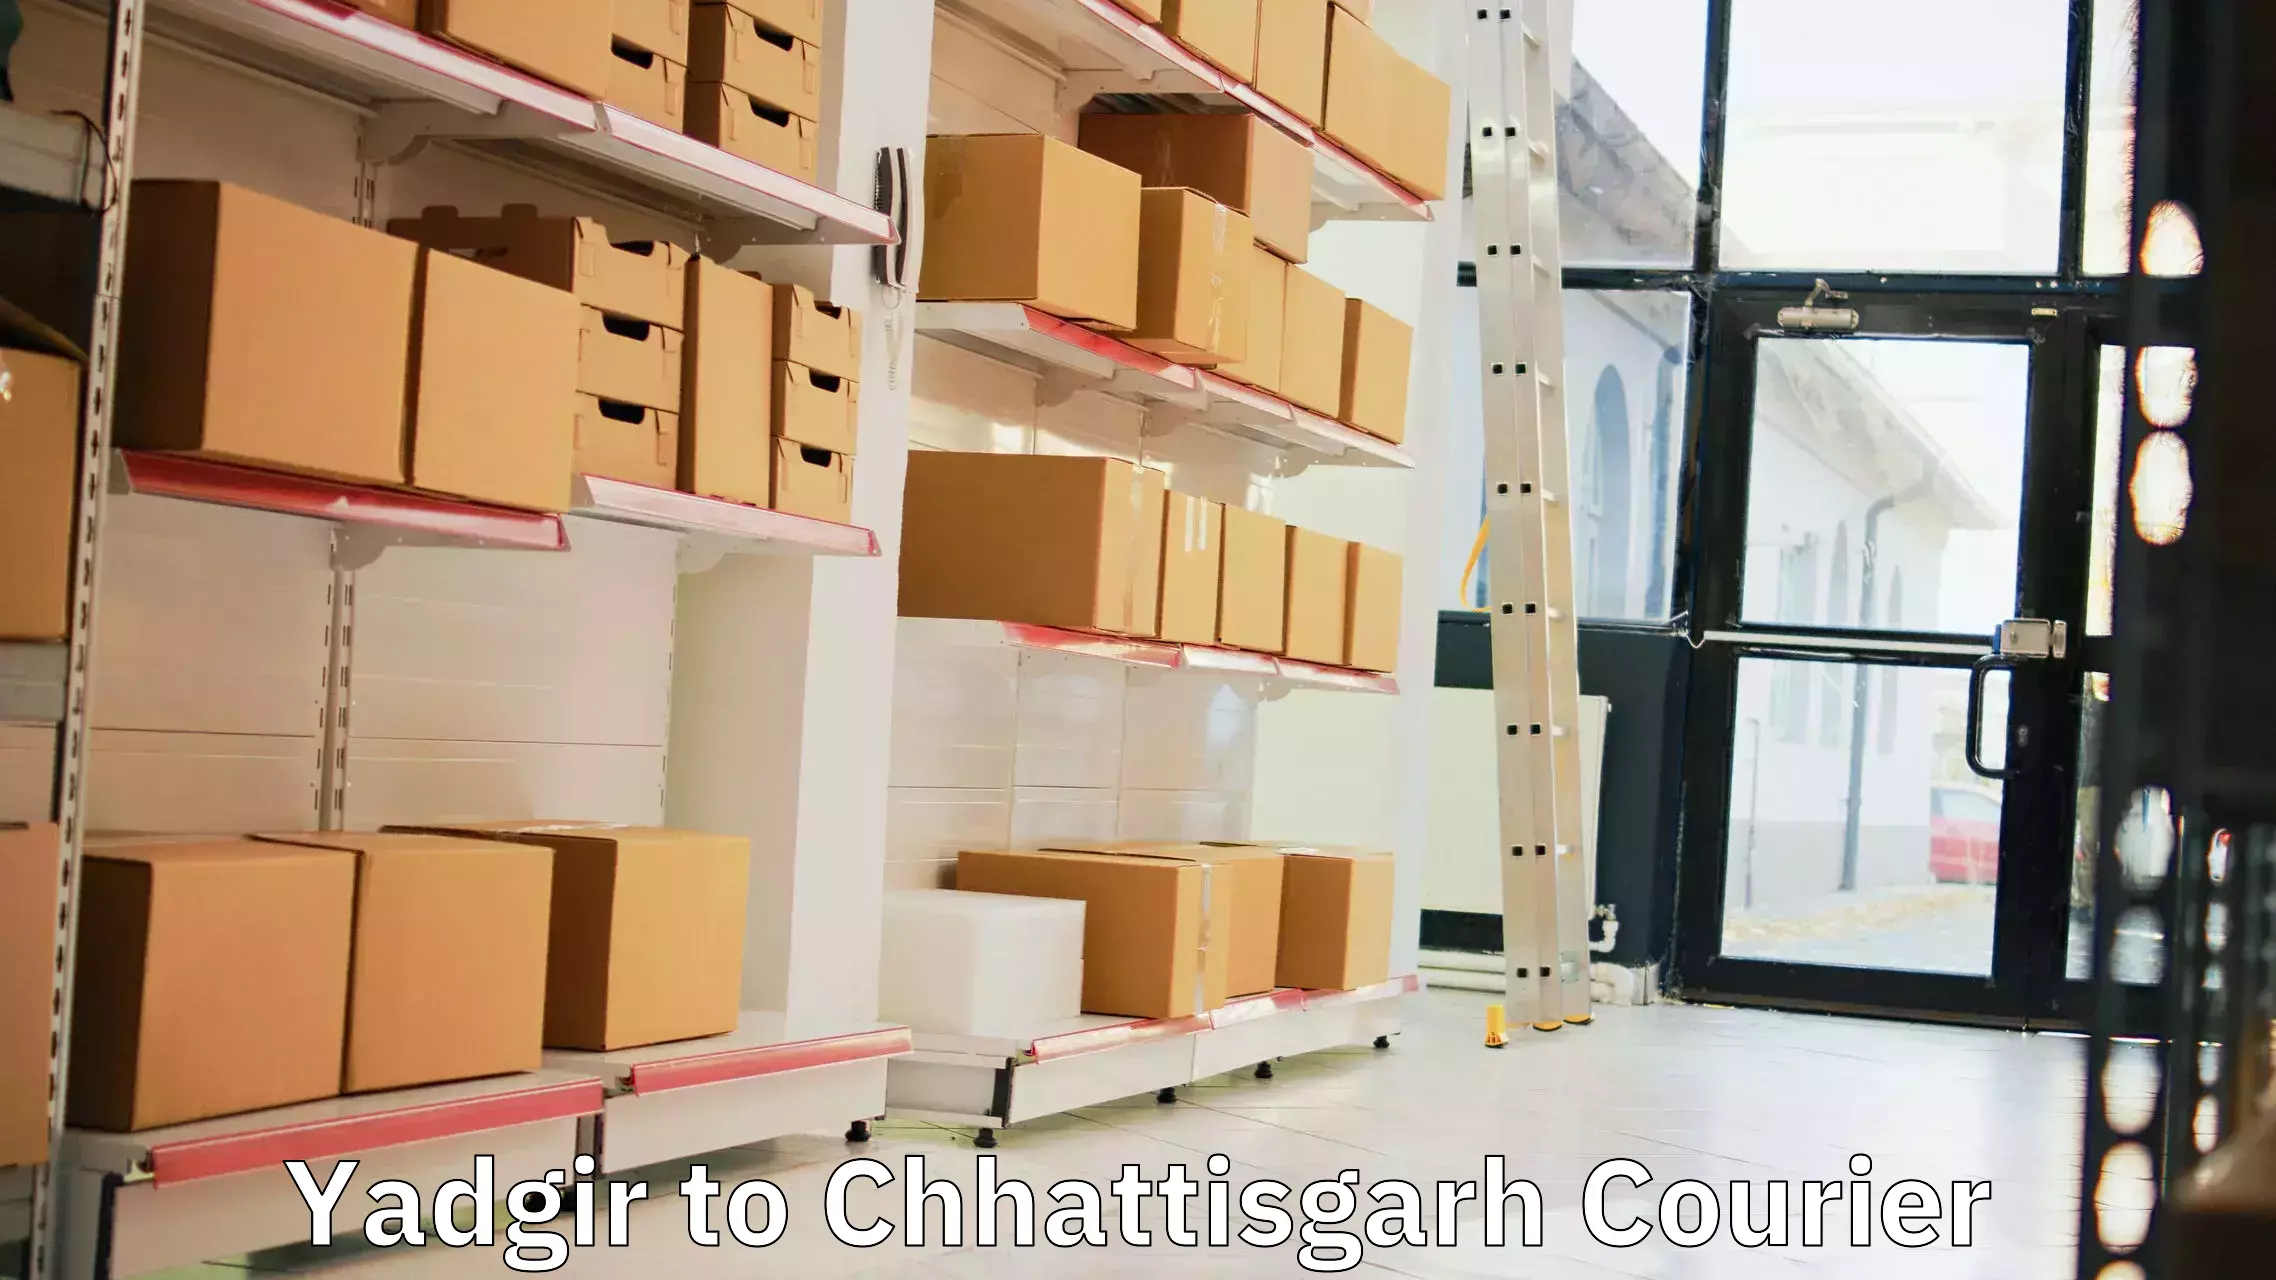 Online courier booking Yadgir to Chhattisgarh